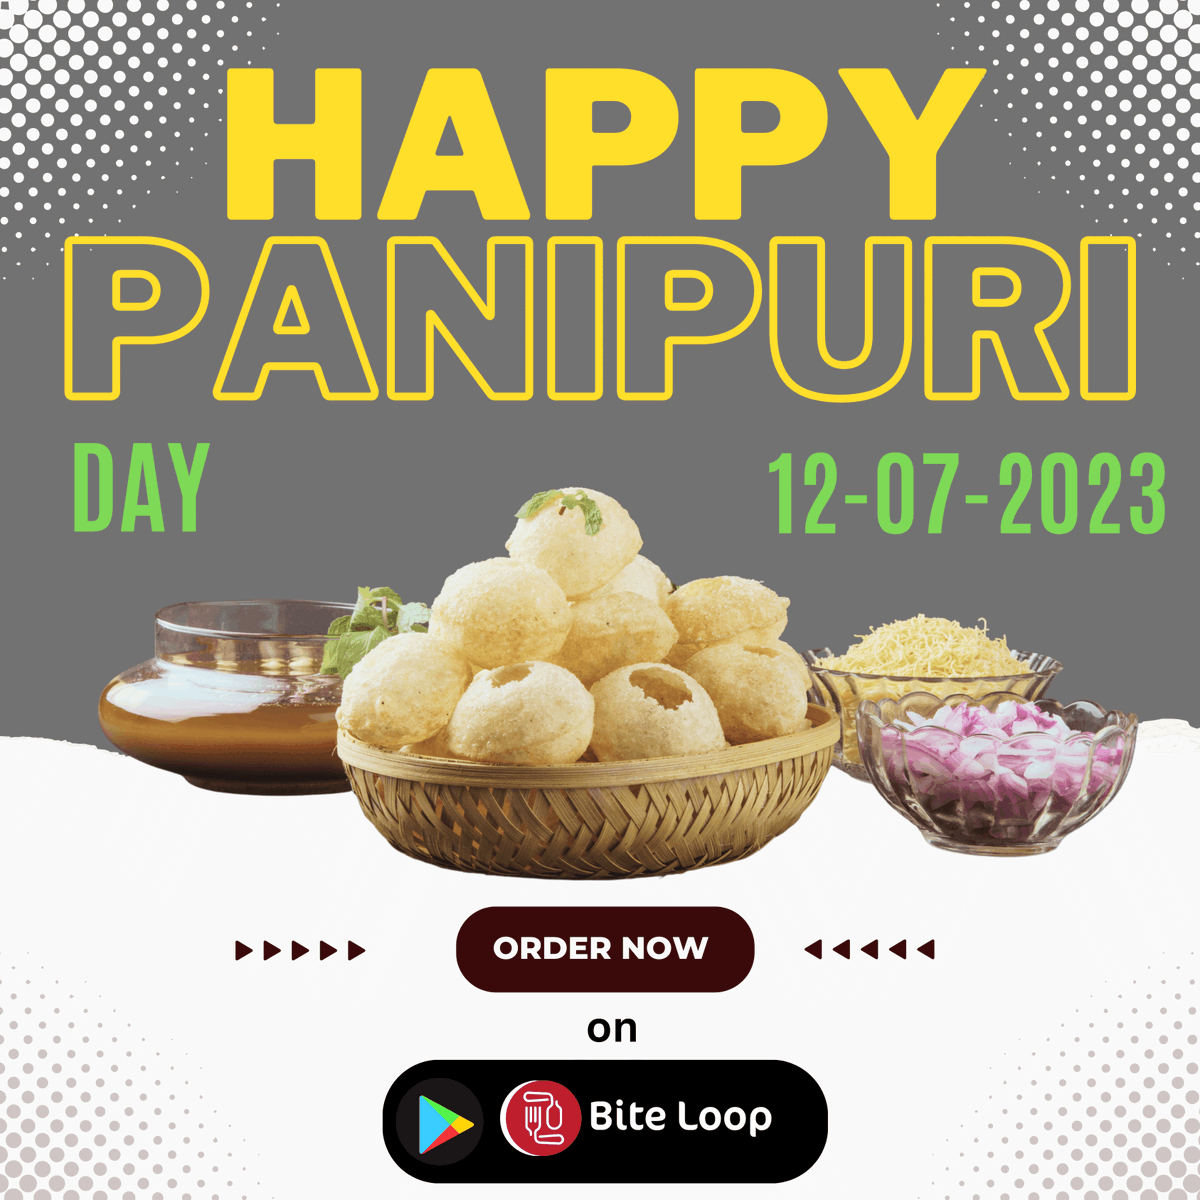 Happy #panipuriday. Most satisfactory #streetfood in #India eaten by #foodies. order food on #biteloop app.

#Indianfoodies
#panipurifans
#foodielovers
#Foodlovers
#Foodie
#Food